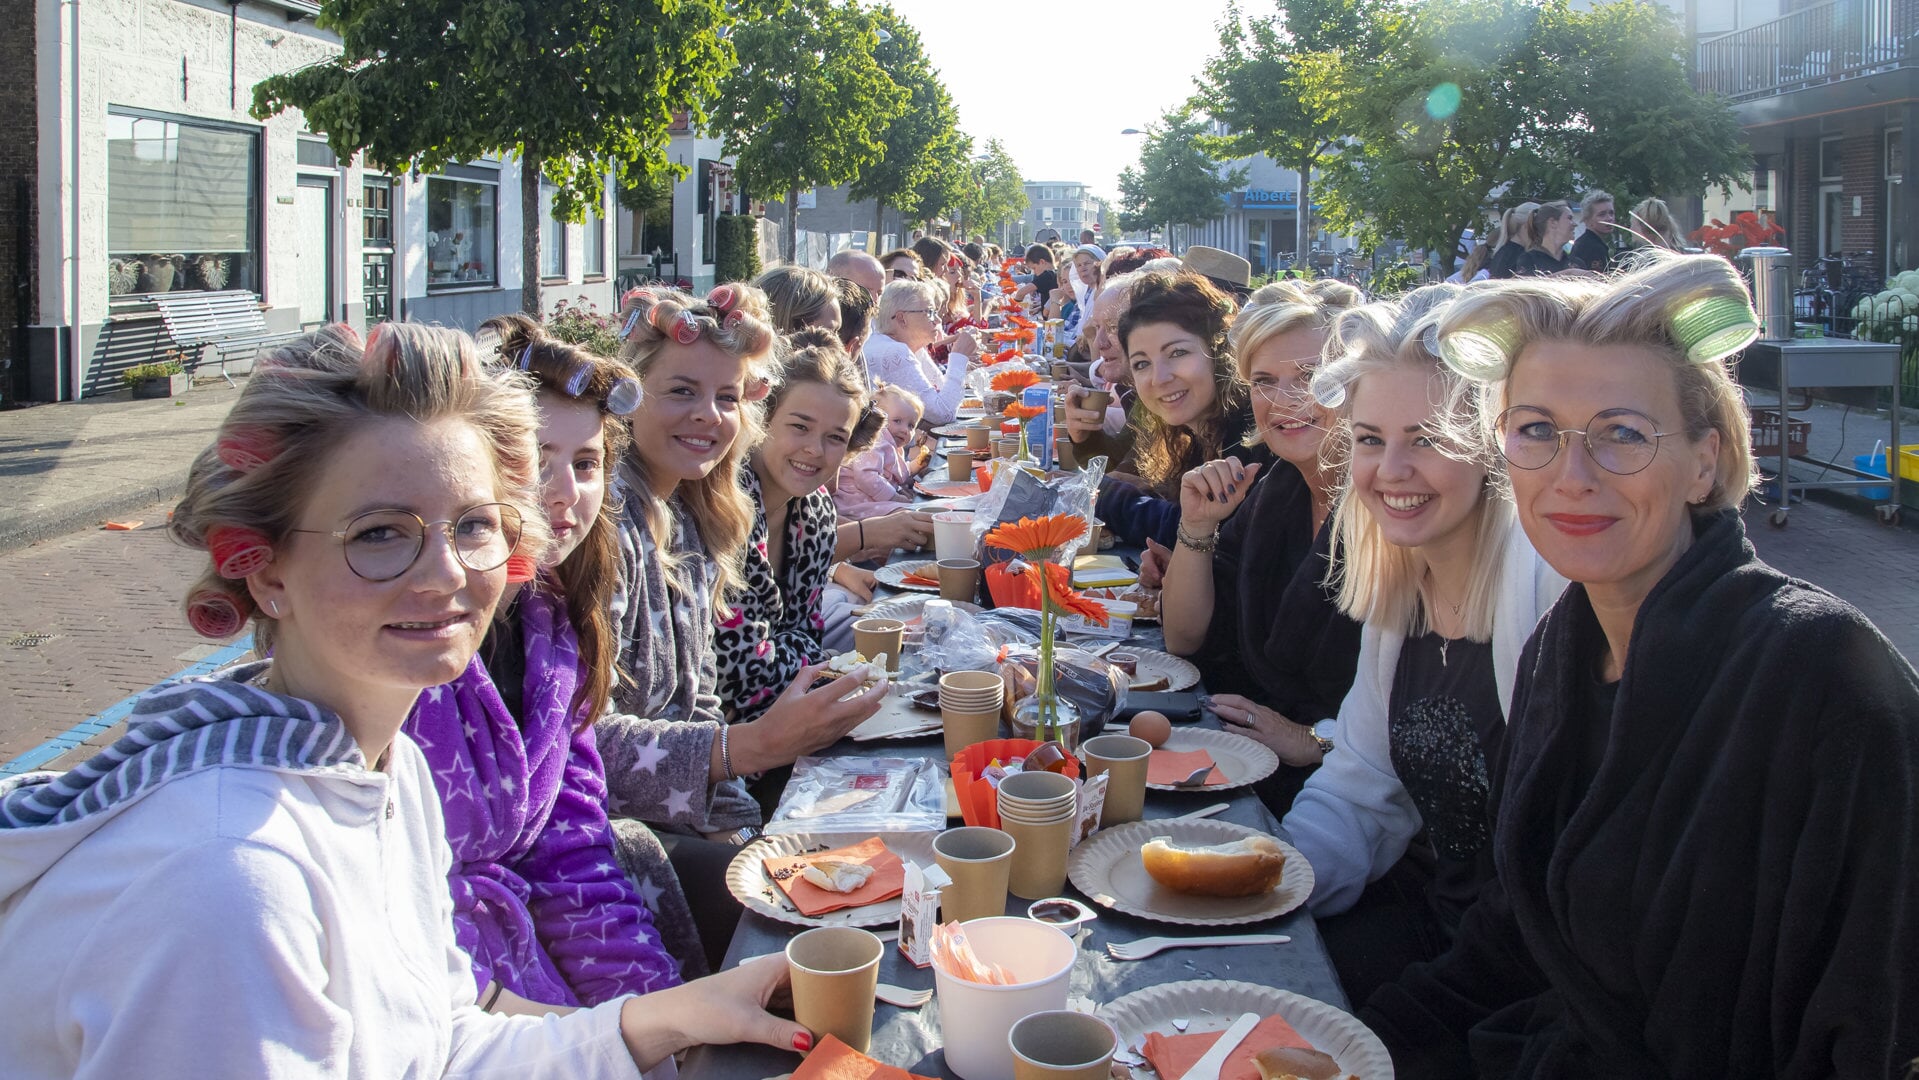 Op zaterdag wordt de Dijkstraat weer omgetoverd tot de gezelligste ontbijttafel van Nederland.